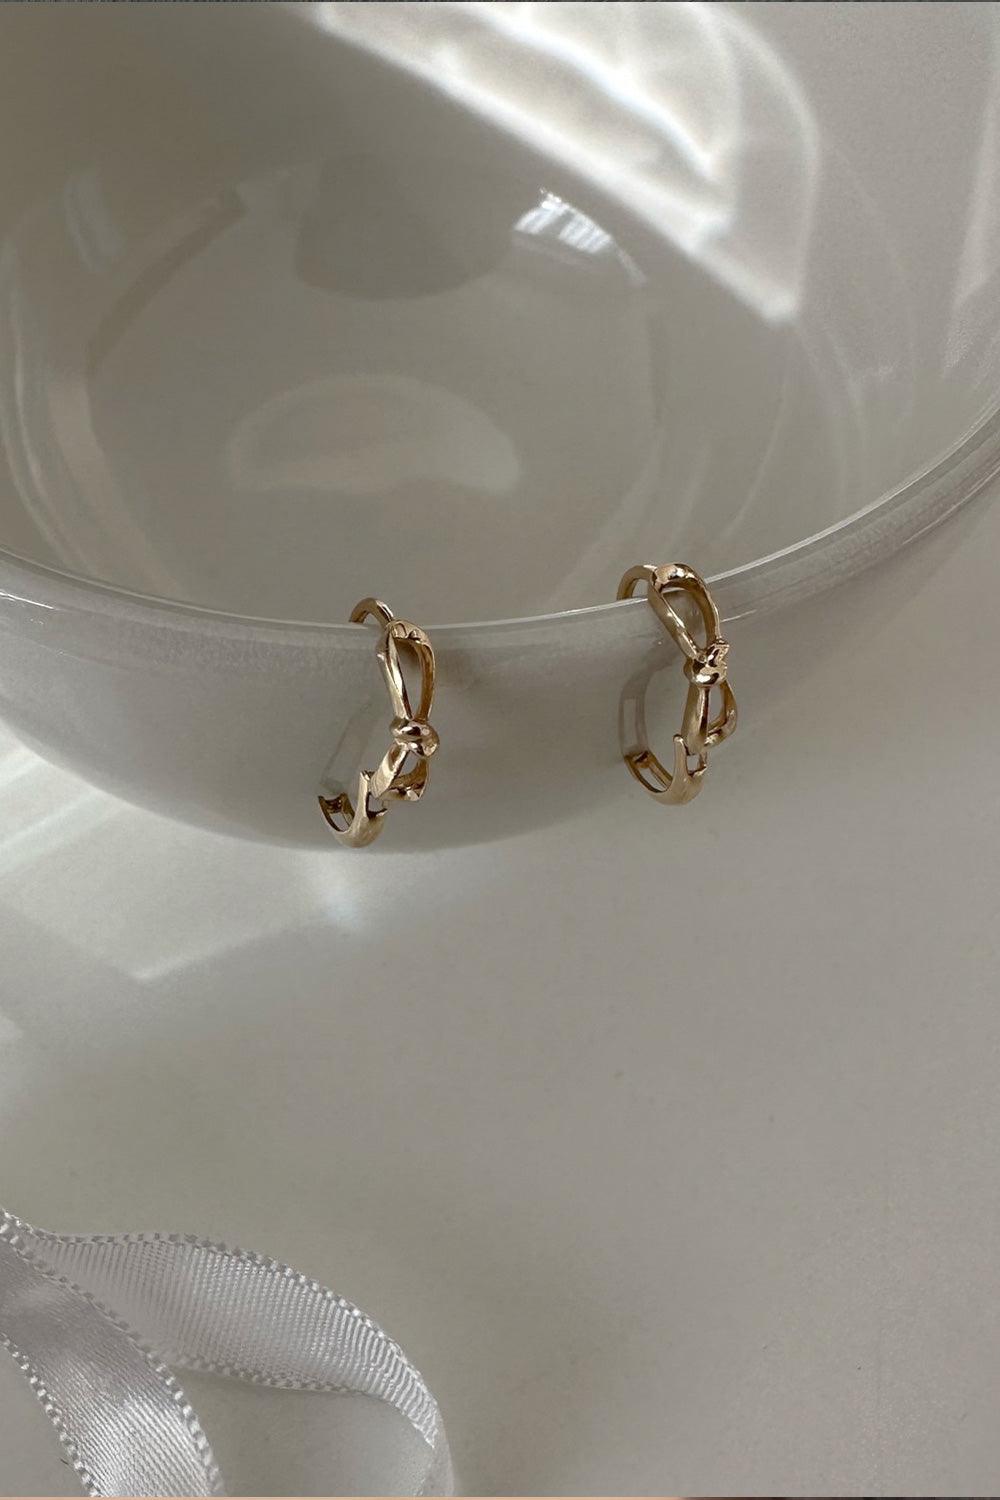 14k ribbon line one touch ring earrings (1pair) - 4MiLi (フォーミリ)